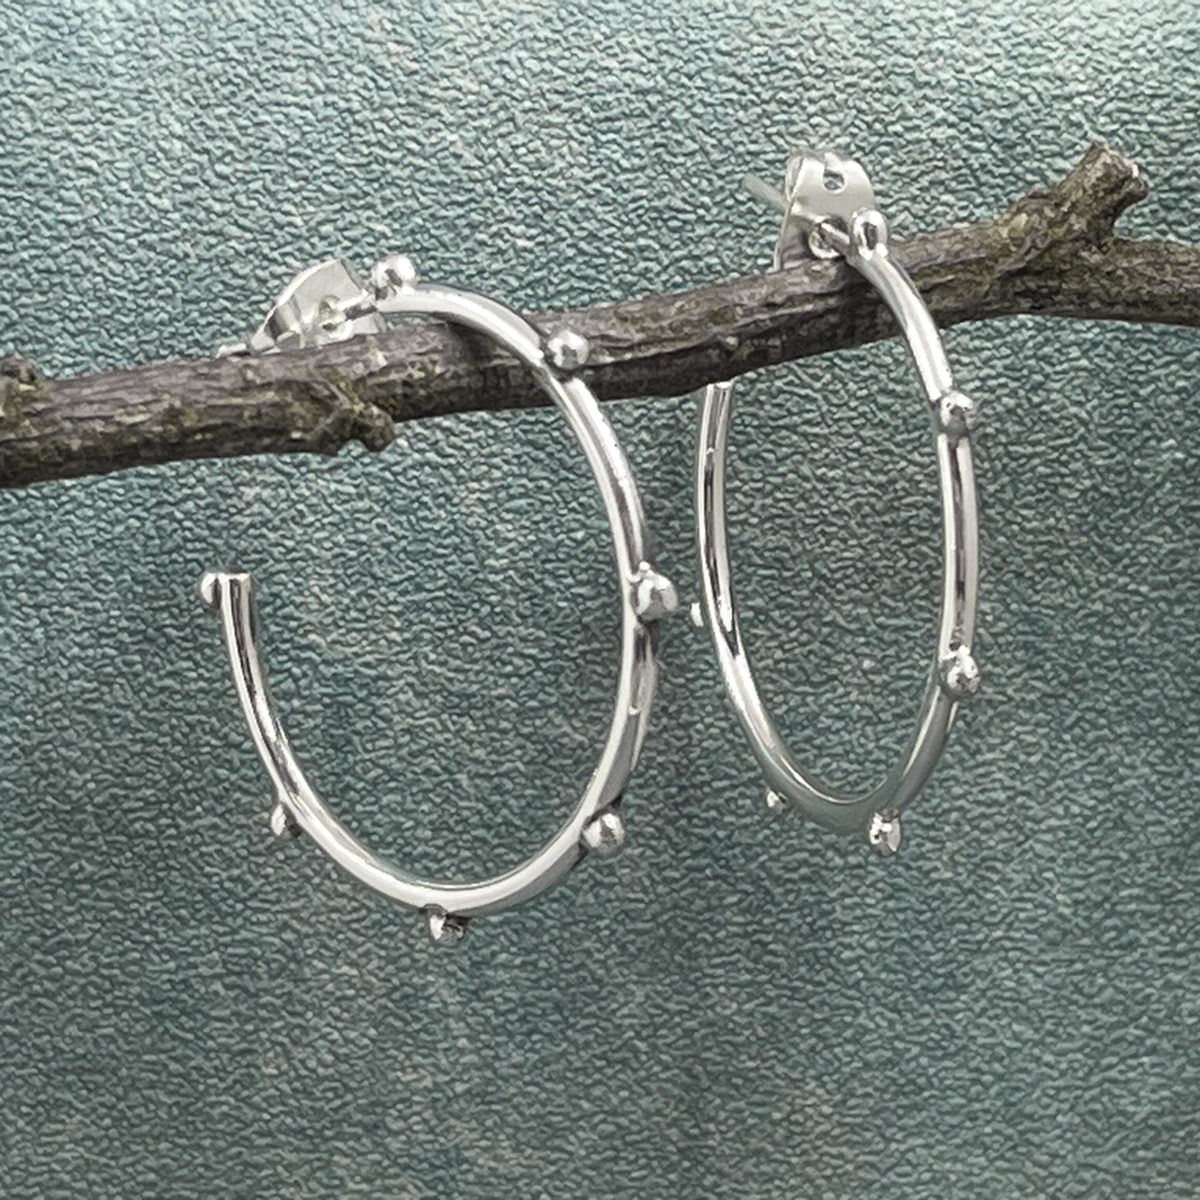 Firmament - Aloe Hoop Silver Earrings with Dots - Stud